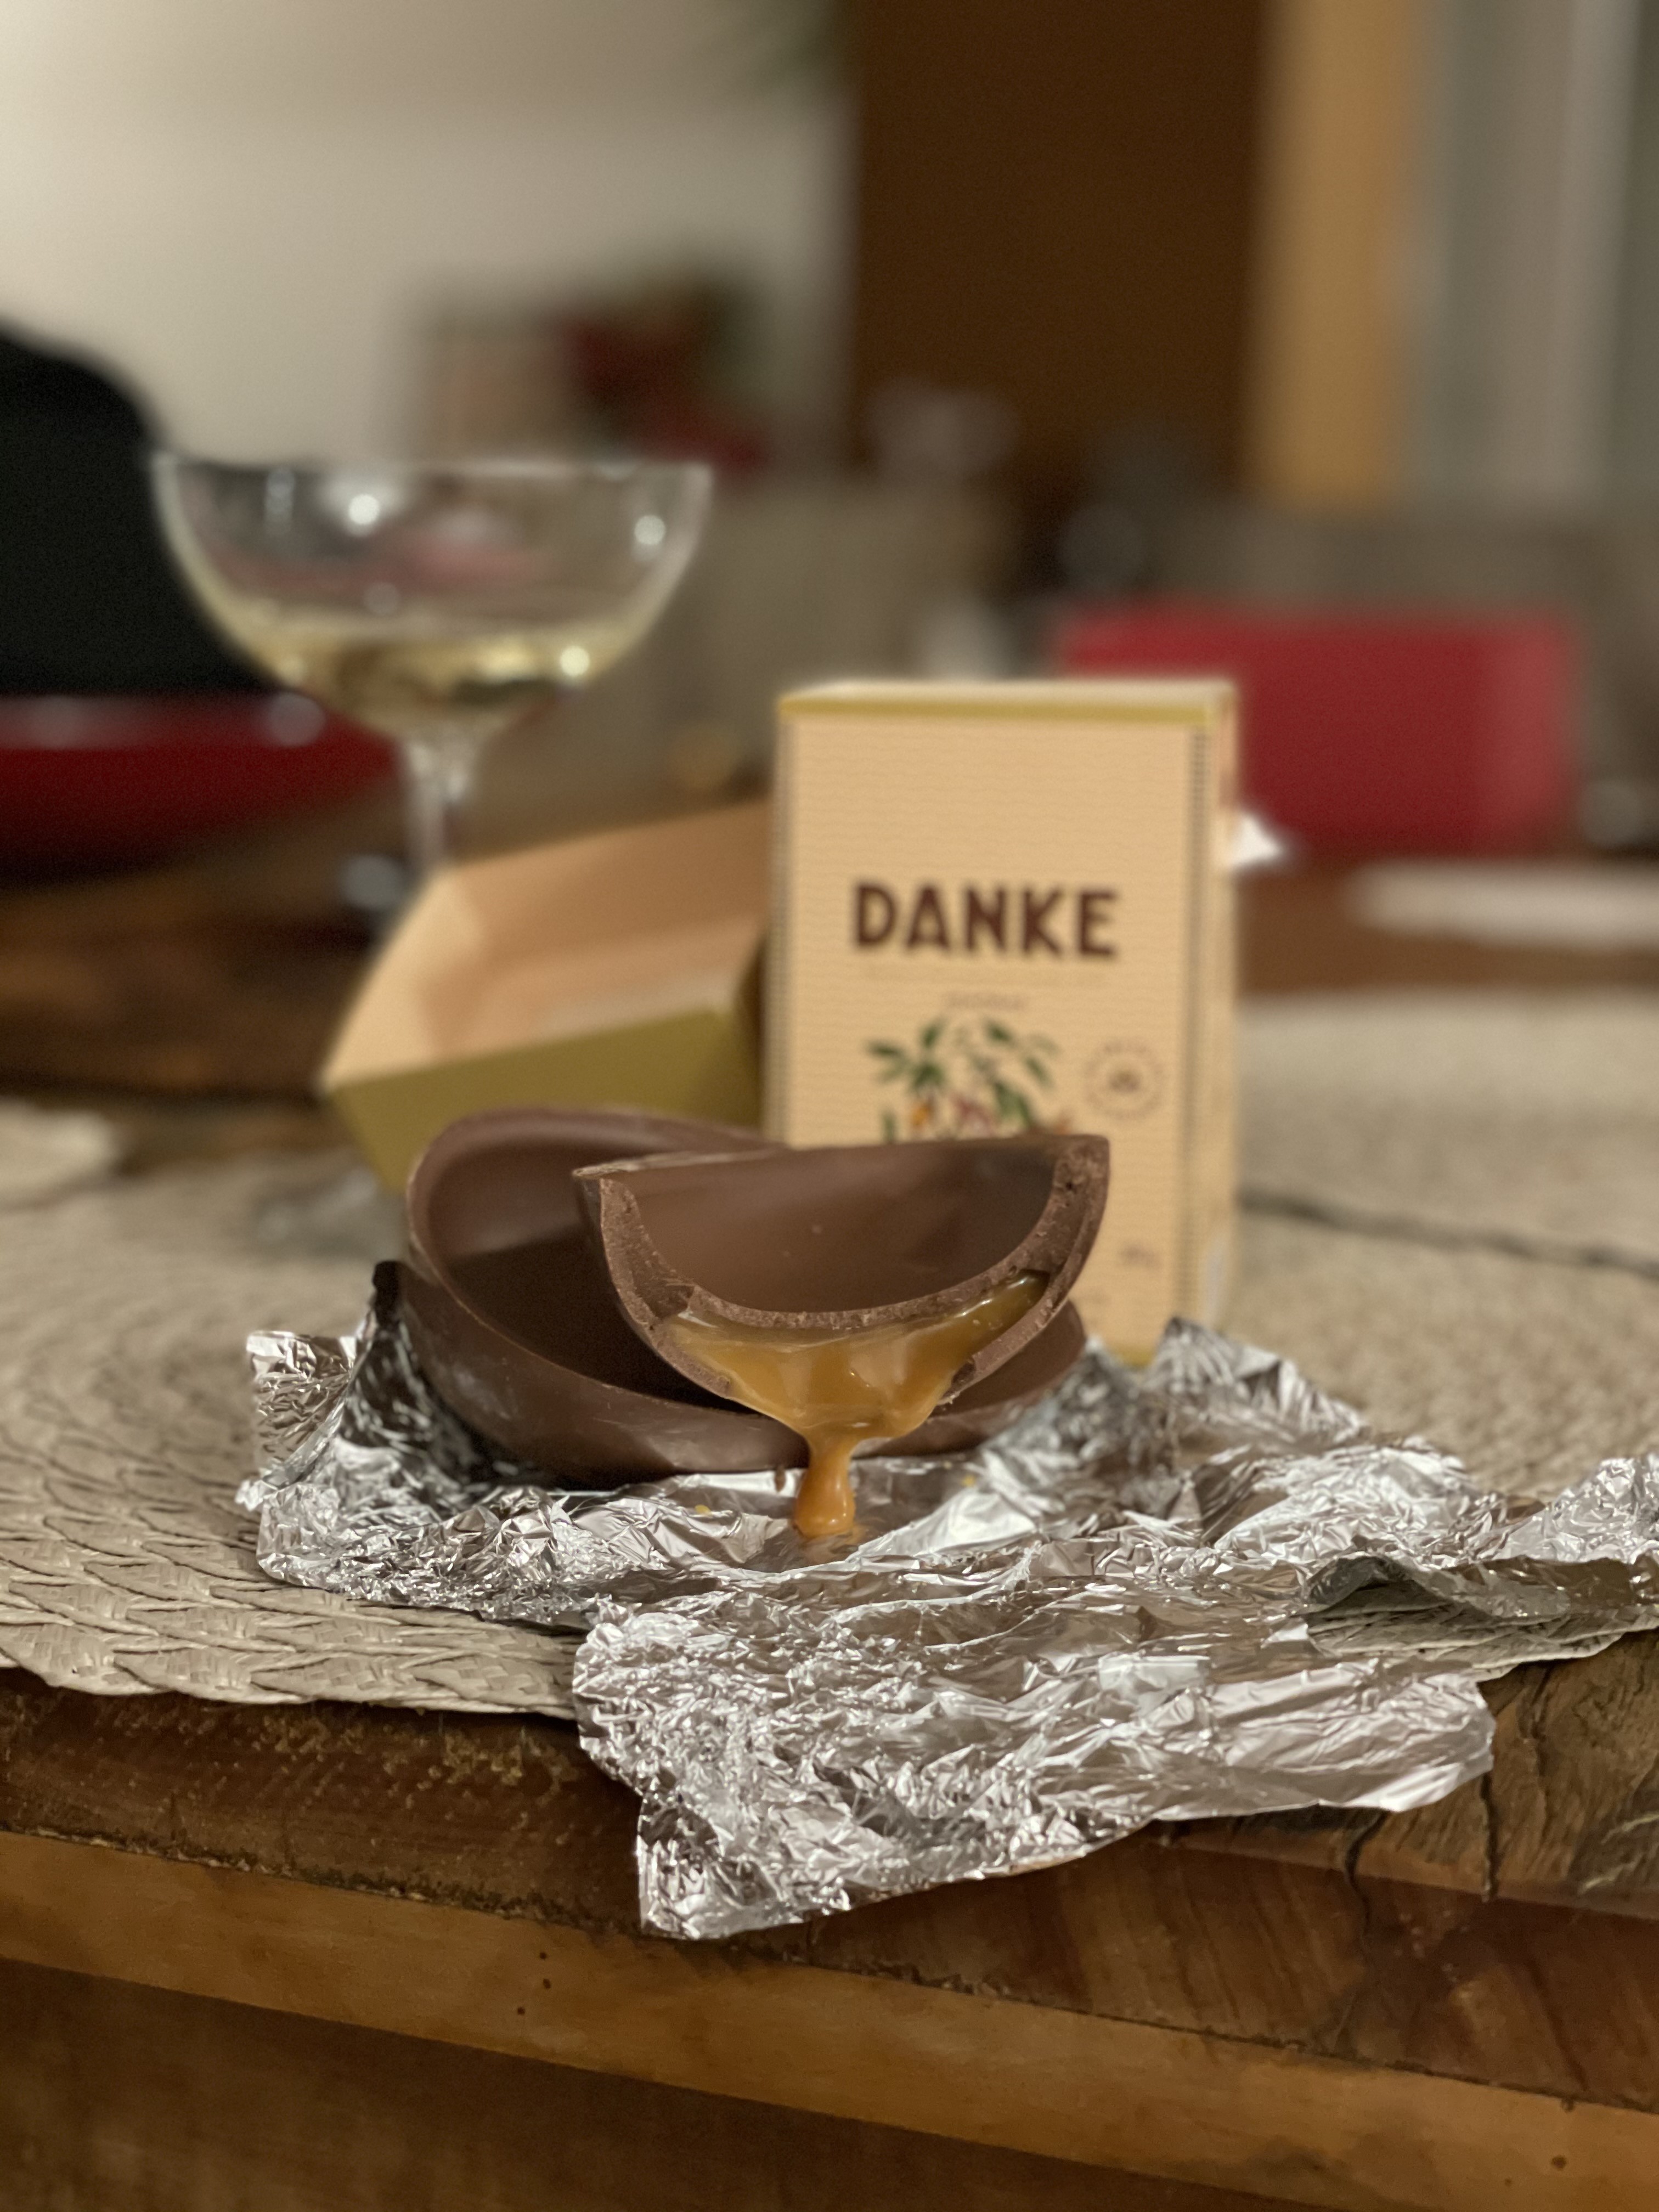 Danke – Ovo de Chocolate ao leite com recheio de caramelo. (Foto: Larissa Januário)